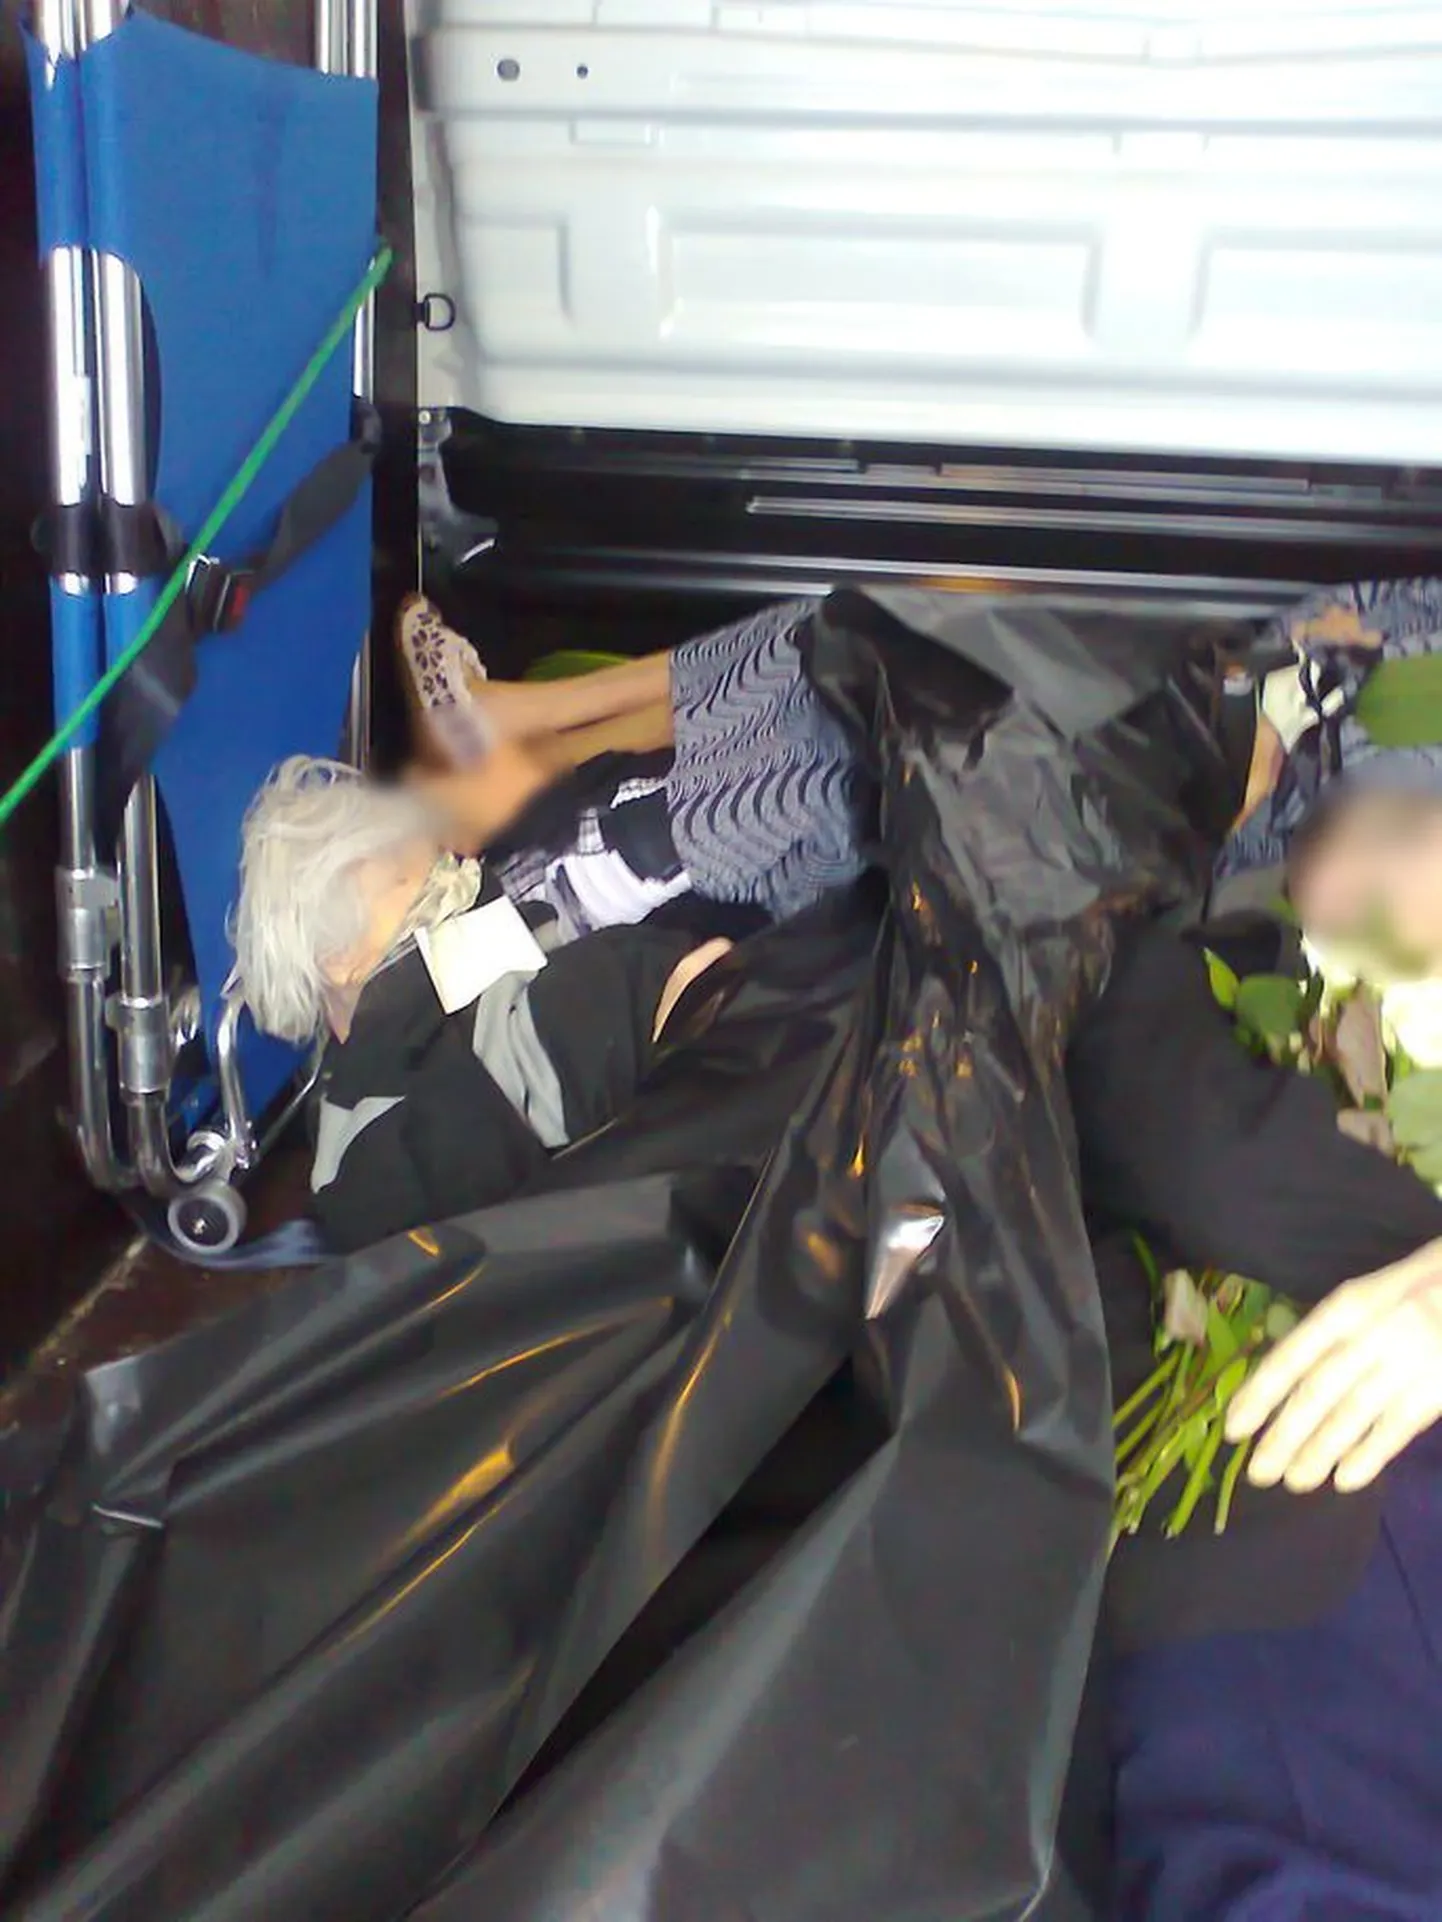 Вот так Раквереское похоронное бюро Viru Matuseteenused OÜ перевозит тела усопших после прощания с близкими до крематориев. Фирма работает по всей Эстонии.